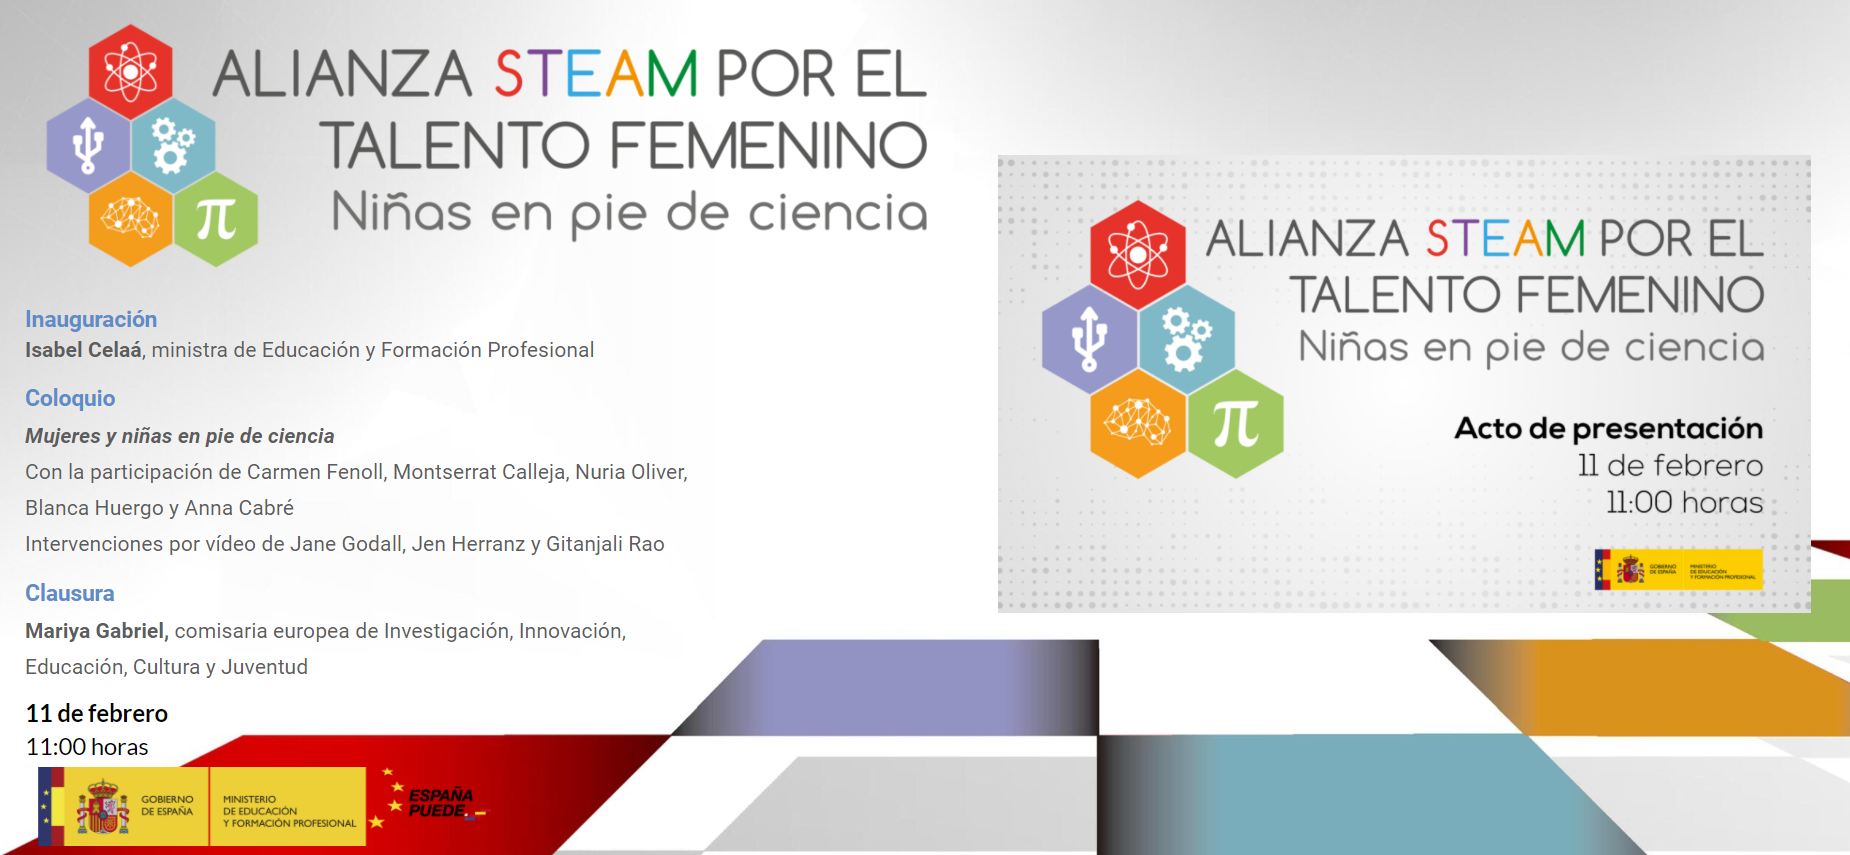 Alianza STEAM por el talento femenino.